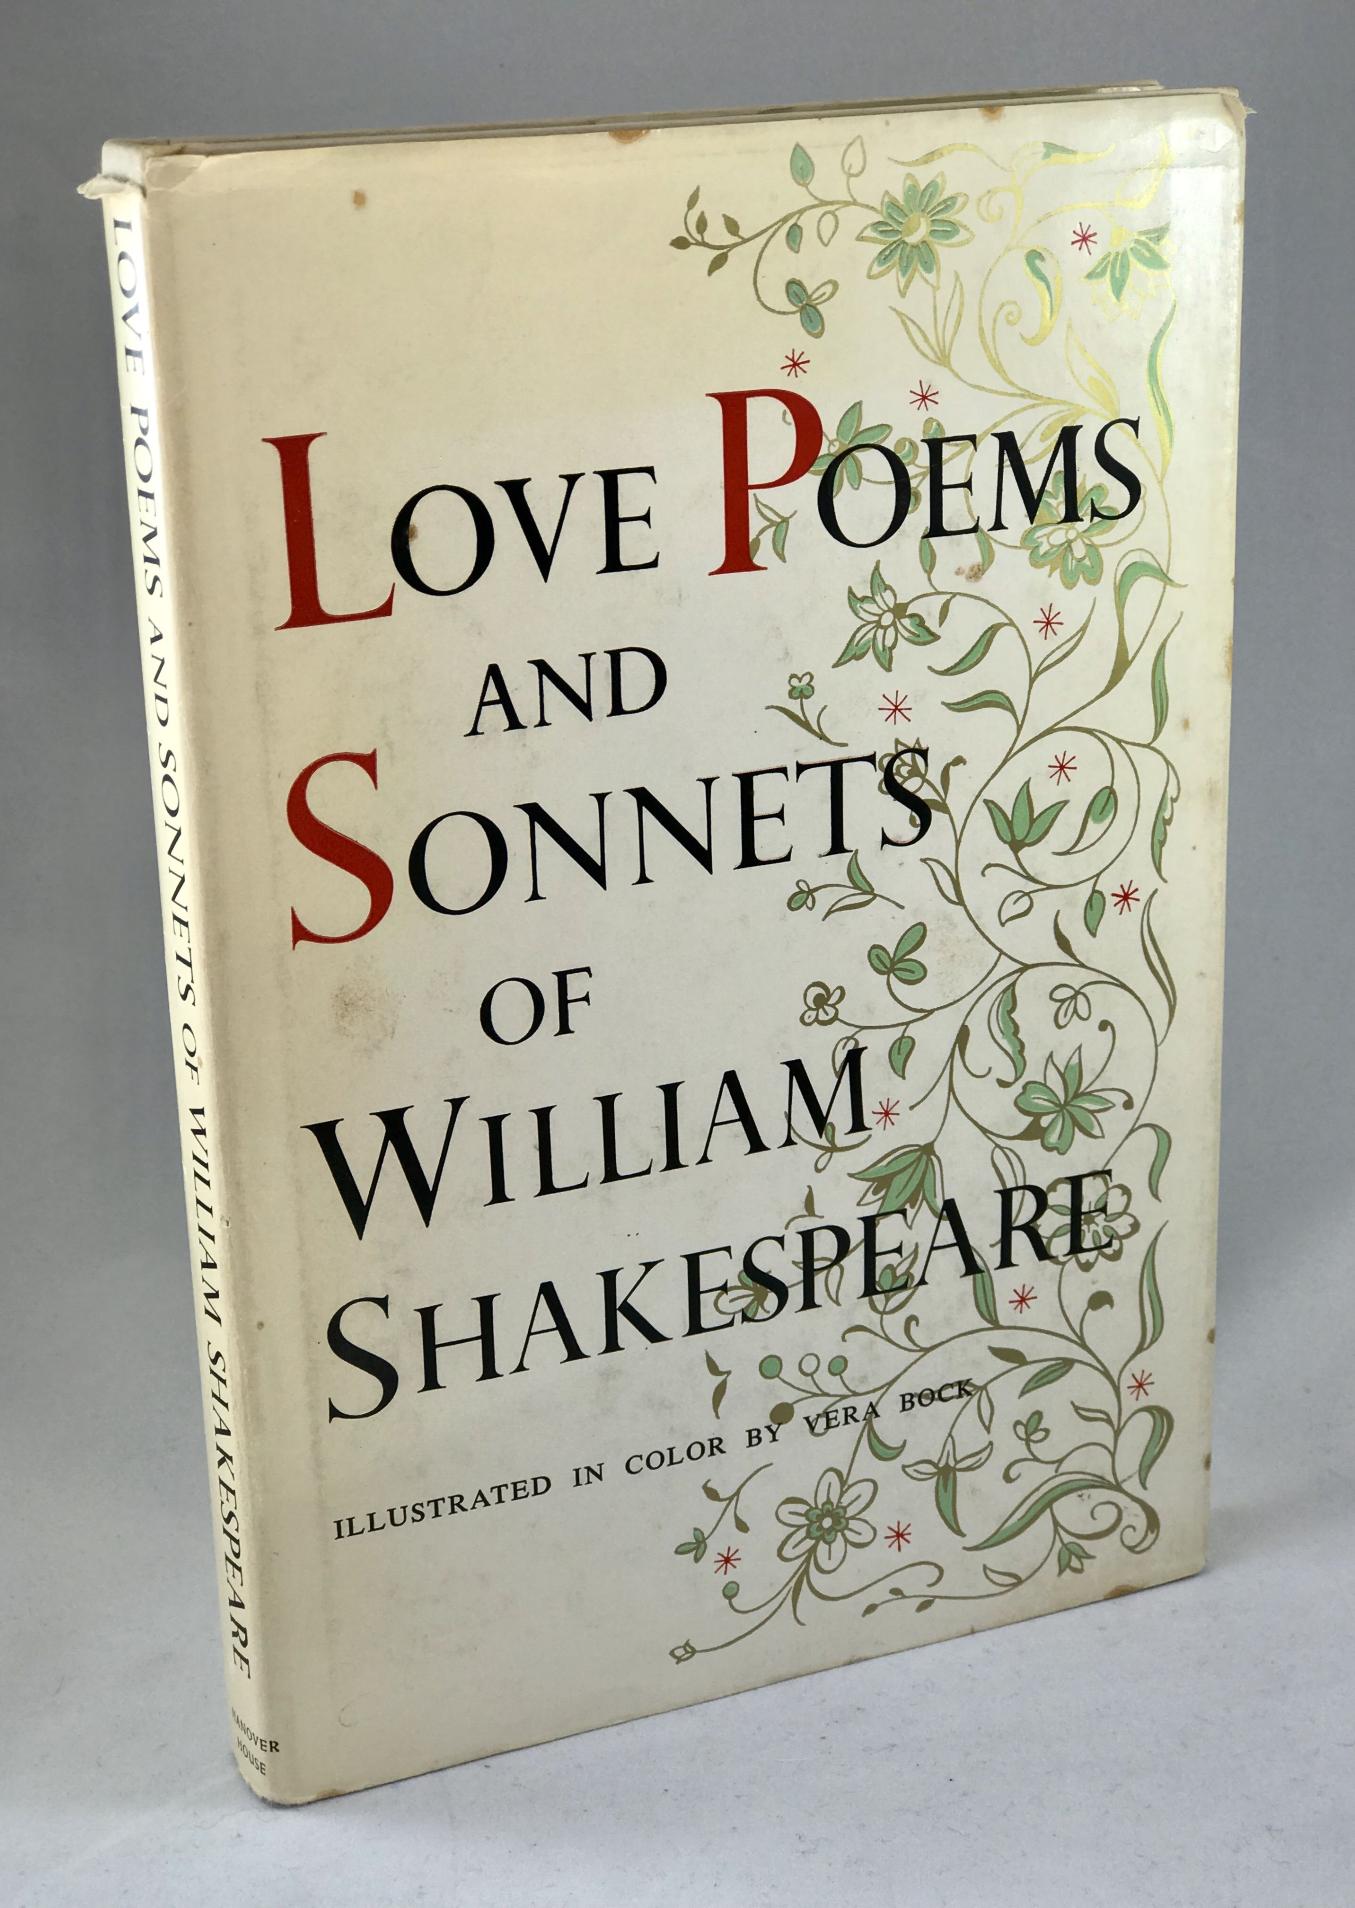 莎士比亚的十四行诗中用到的比喻